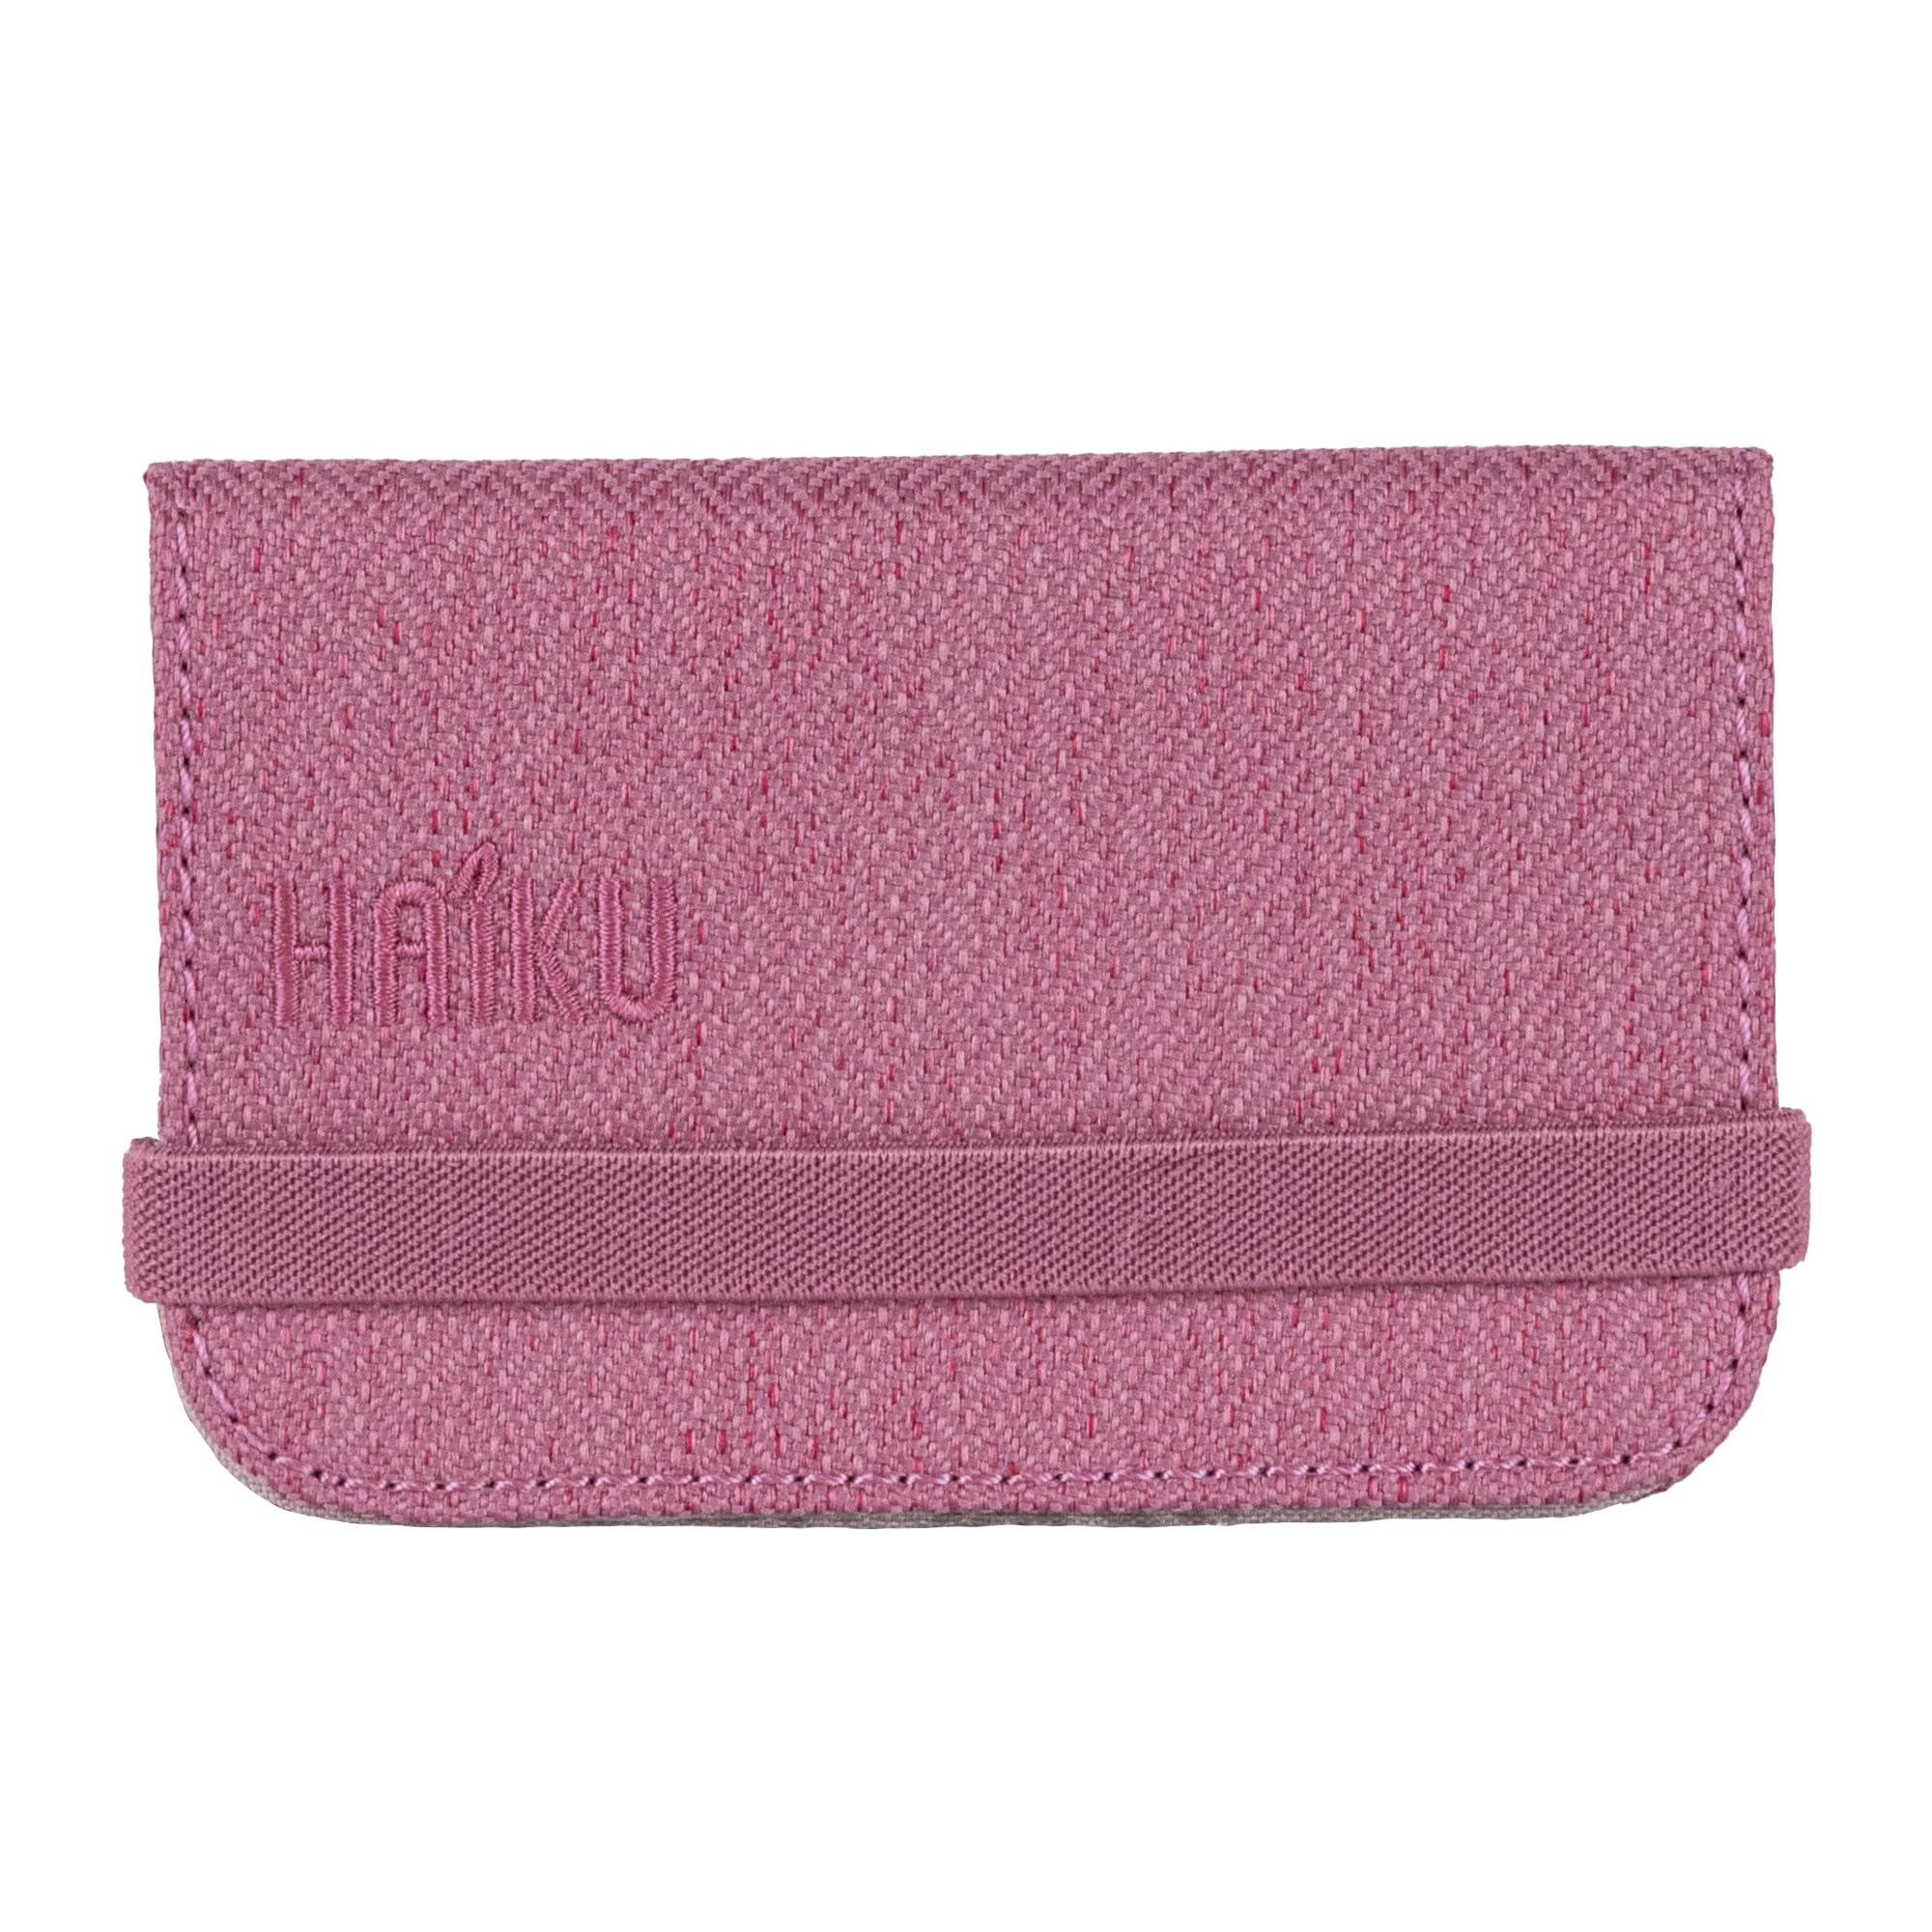 HAIKU RFID-Mini-Geldbörse 2.0, minimalistische Tasche und Geldbörse, RFID-Blockierung, Kreditkarten- und Ausweishalter mit zusätzlichem Schutz, Cherry Blossom